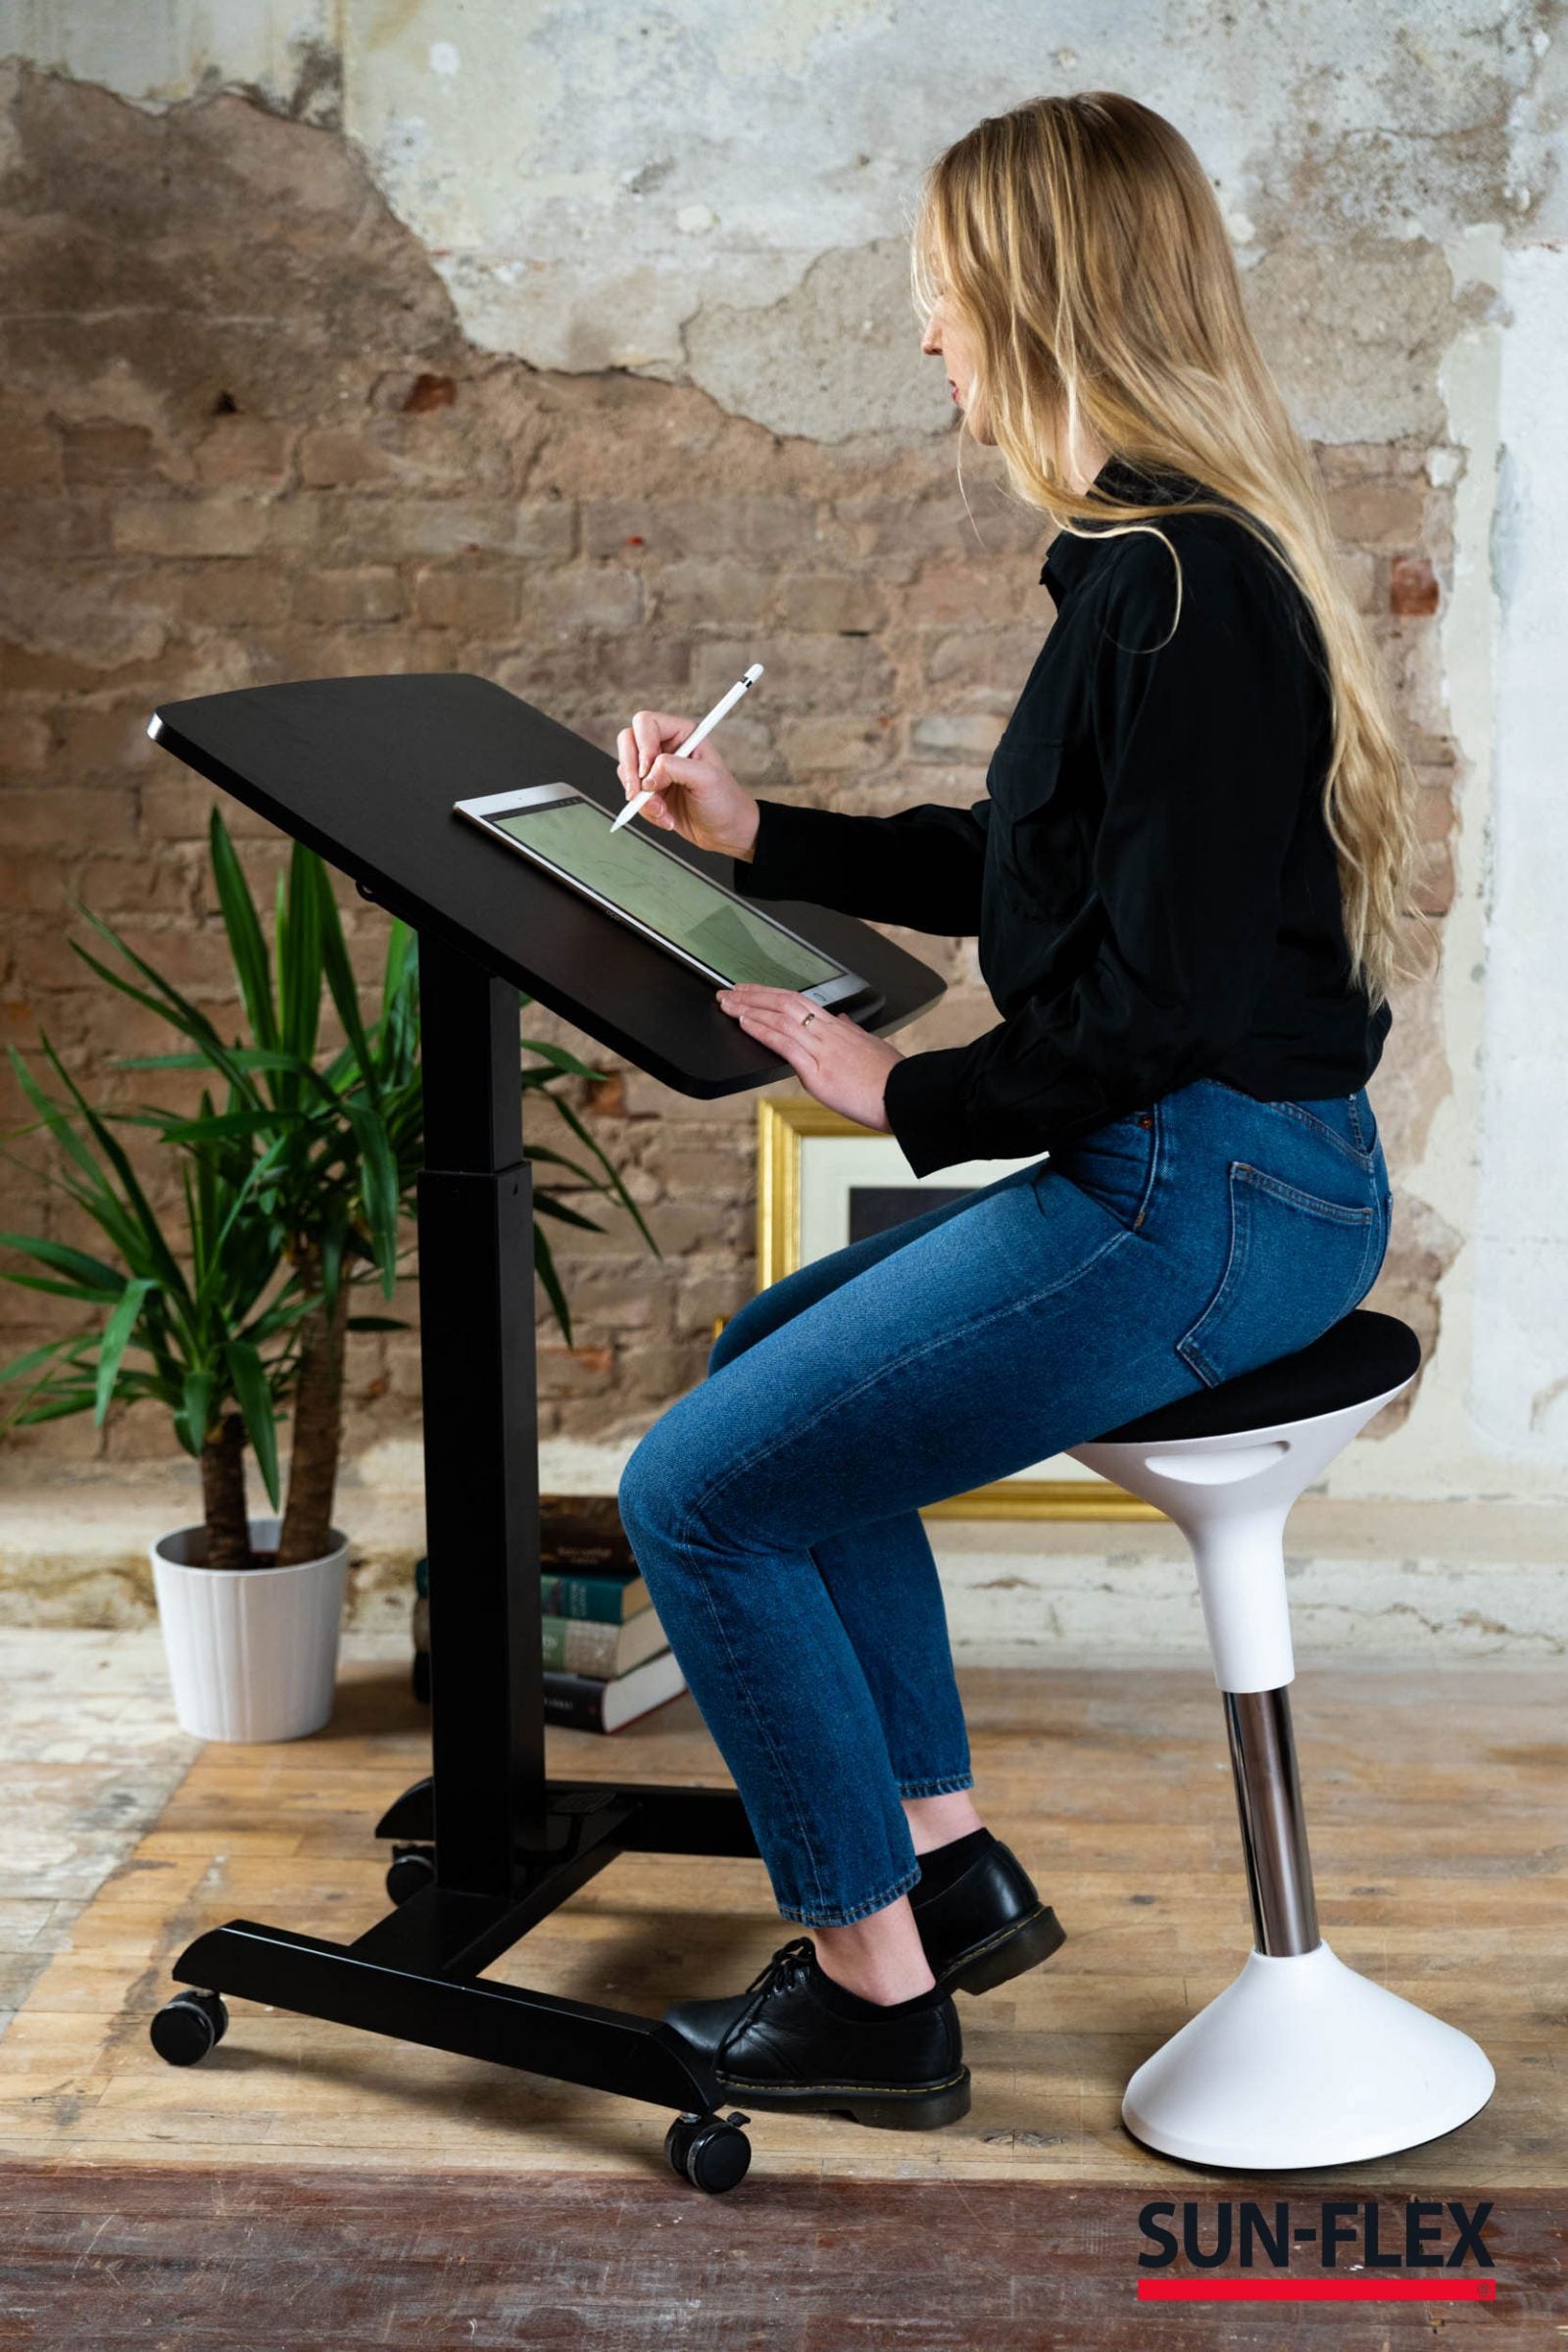 kvinna sitter och skissar med hjälp av den tiltande funktionen på easy desk pro skrivbord